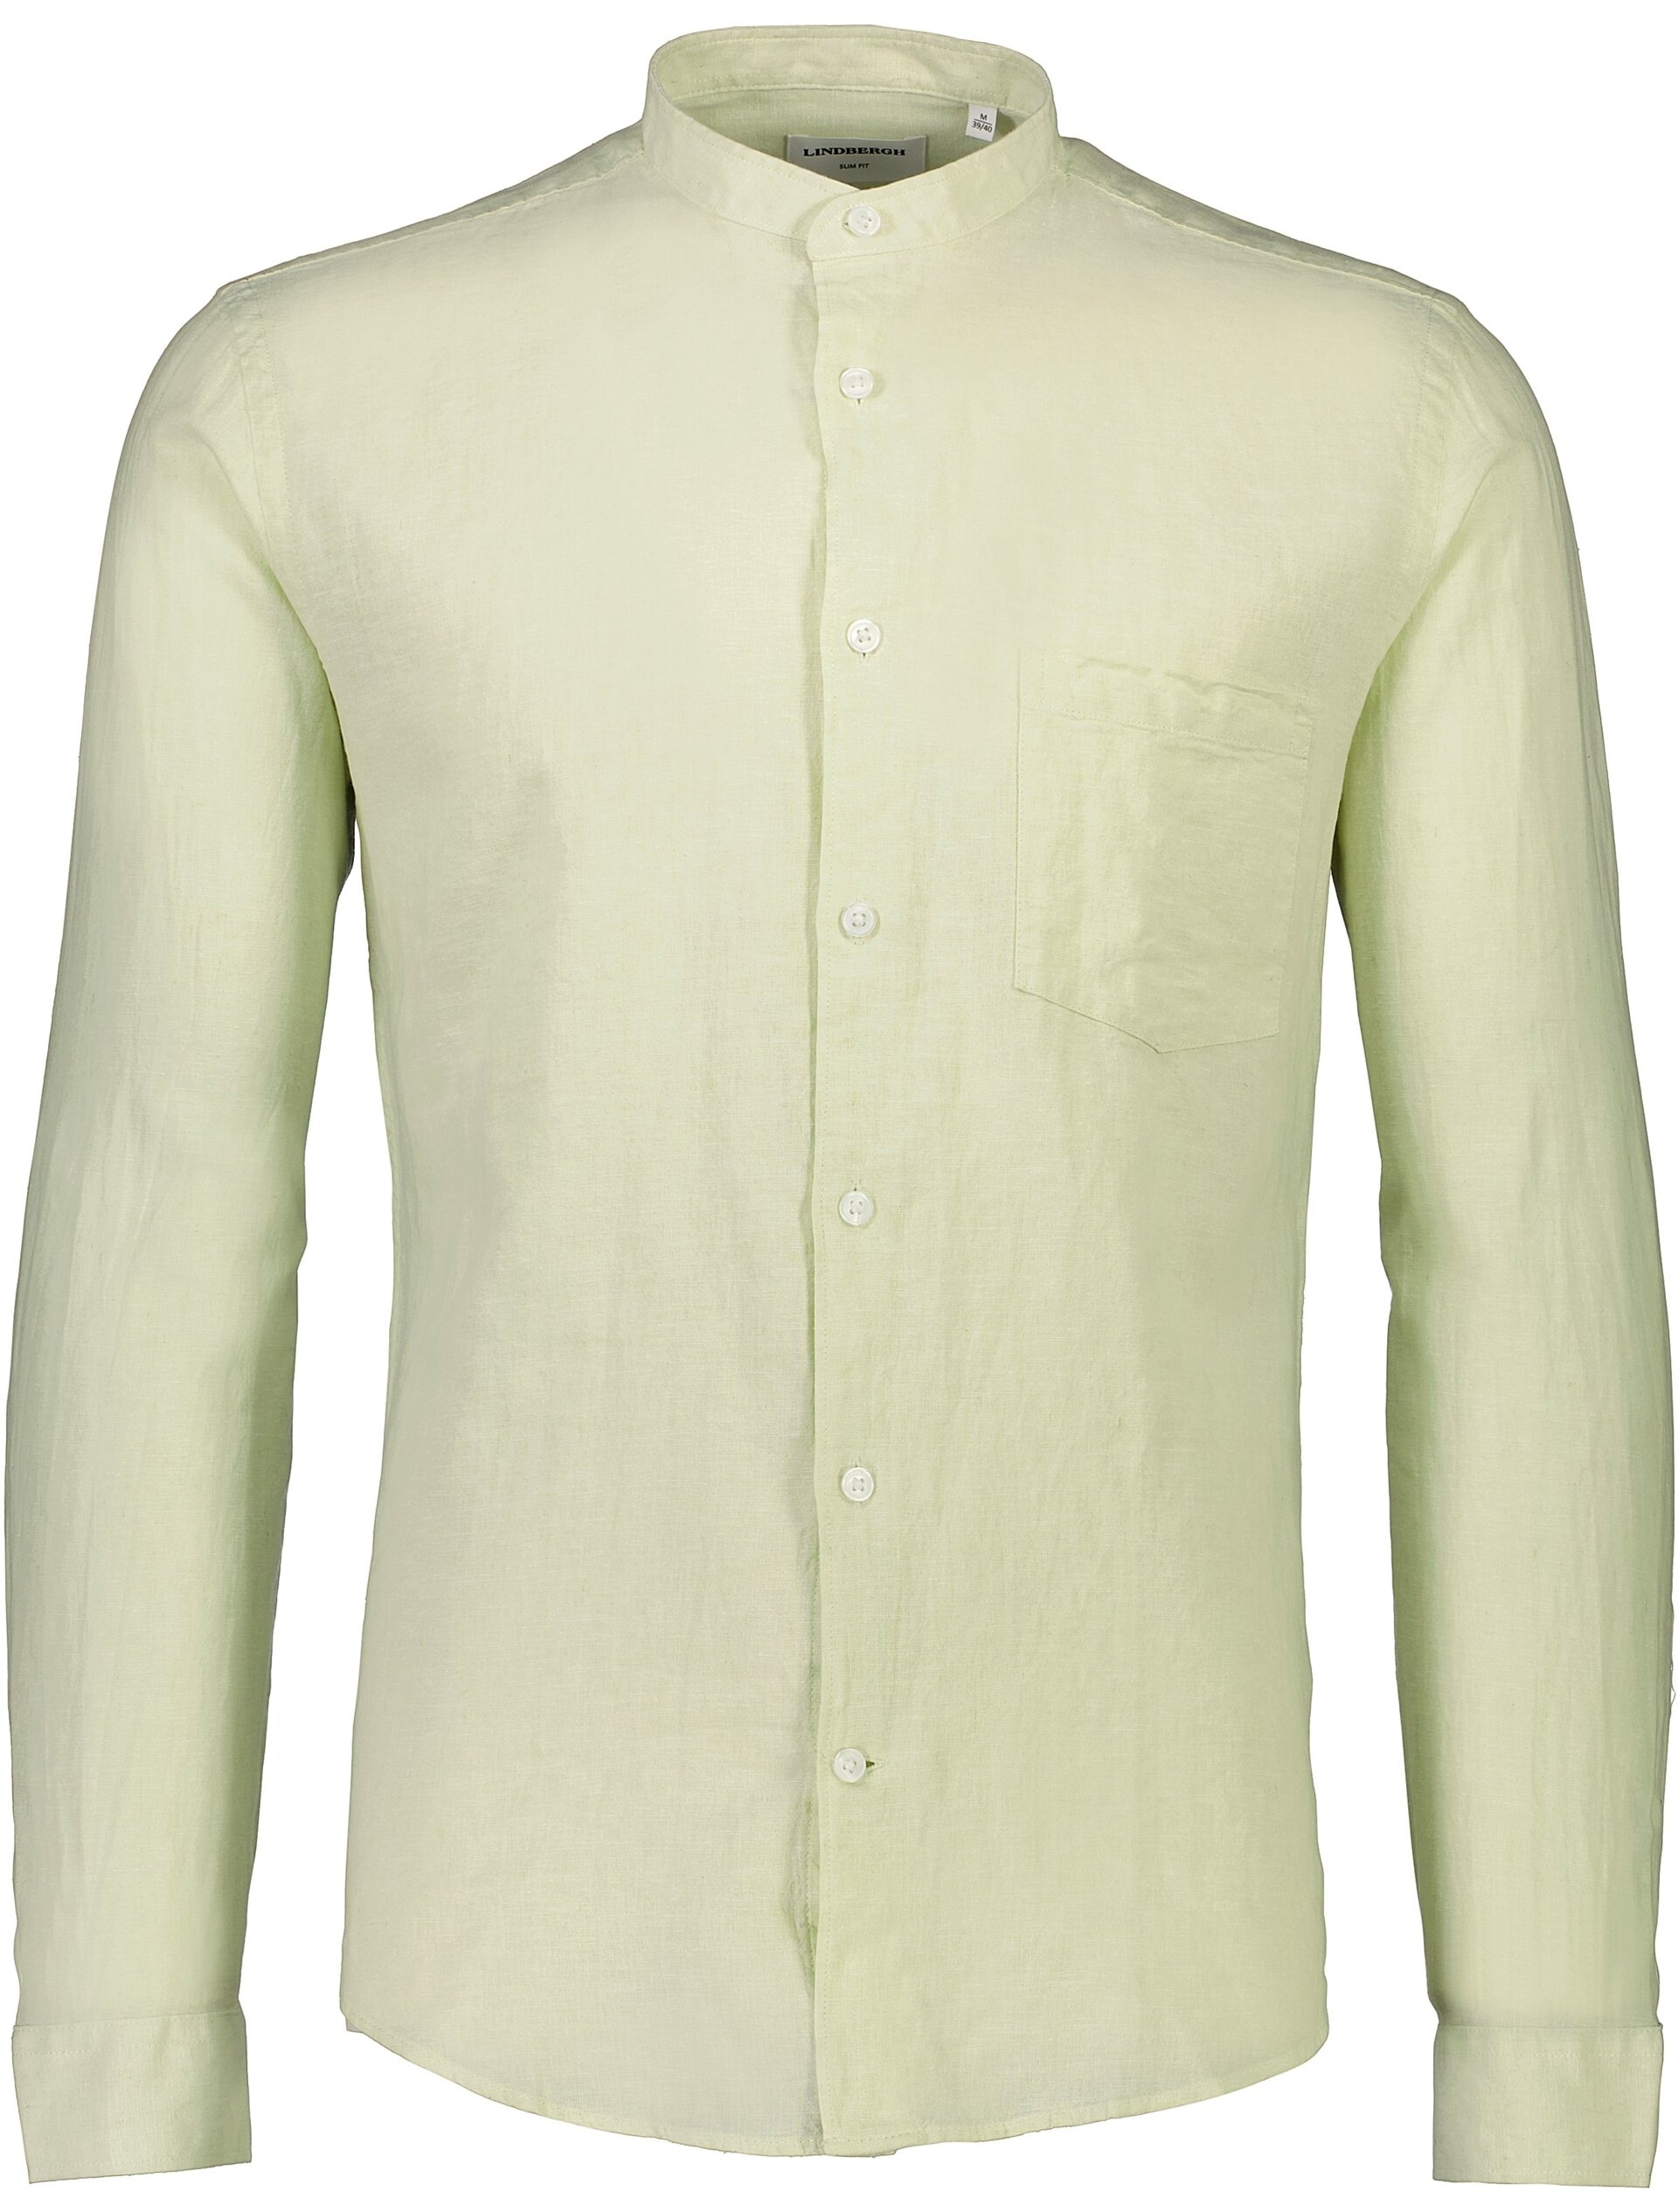 Lindbergh Leinenhemd grün / mint